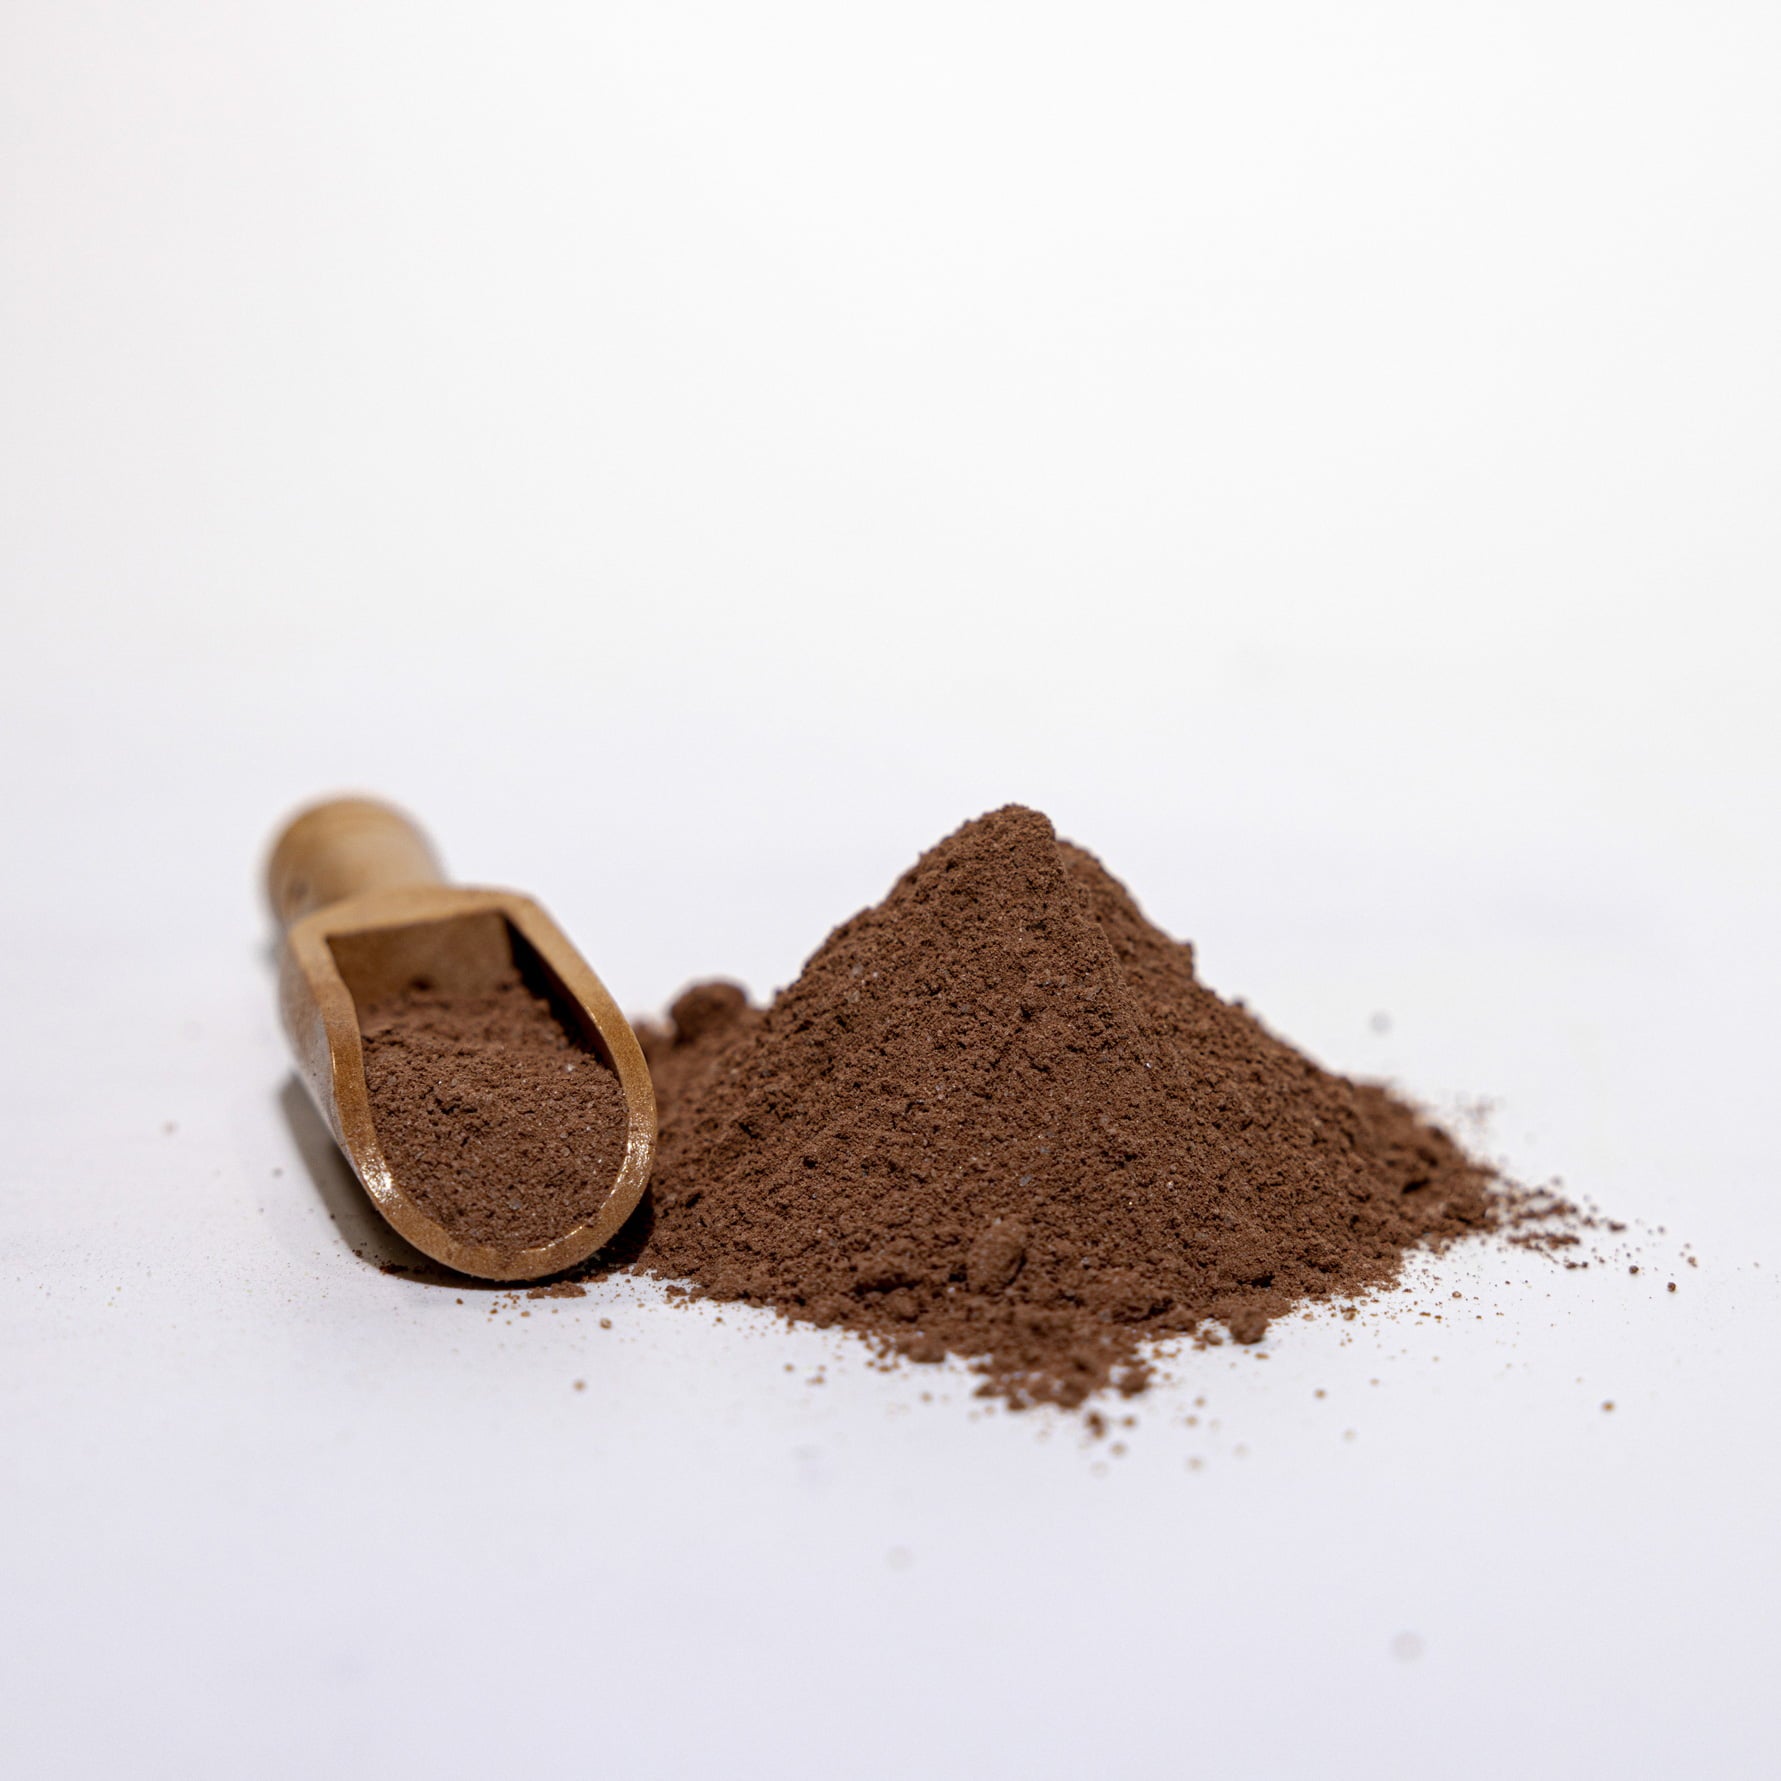 Cocoa Flavoured Powder / 特调可可味粉固体饮料